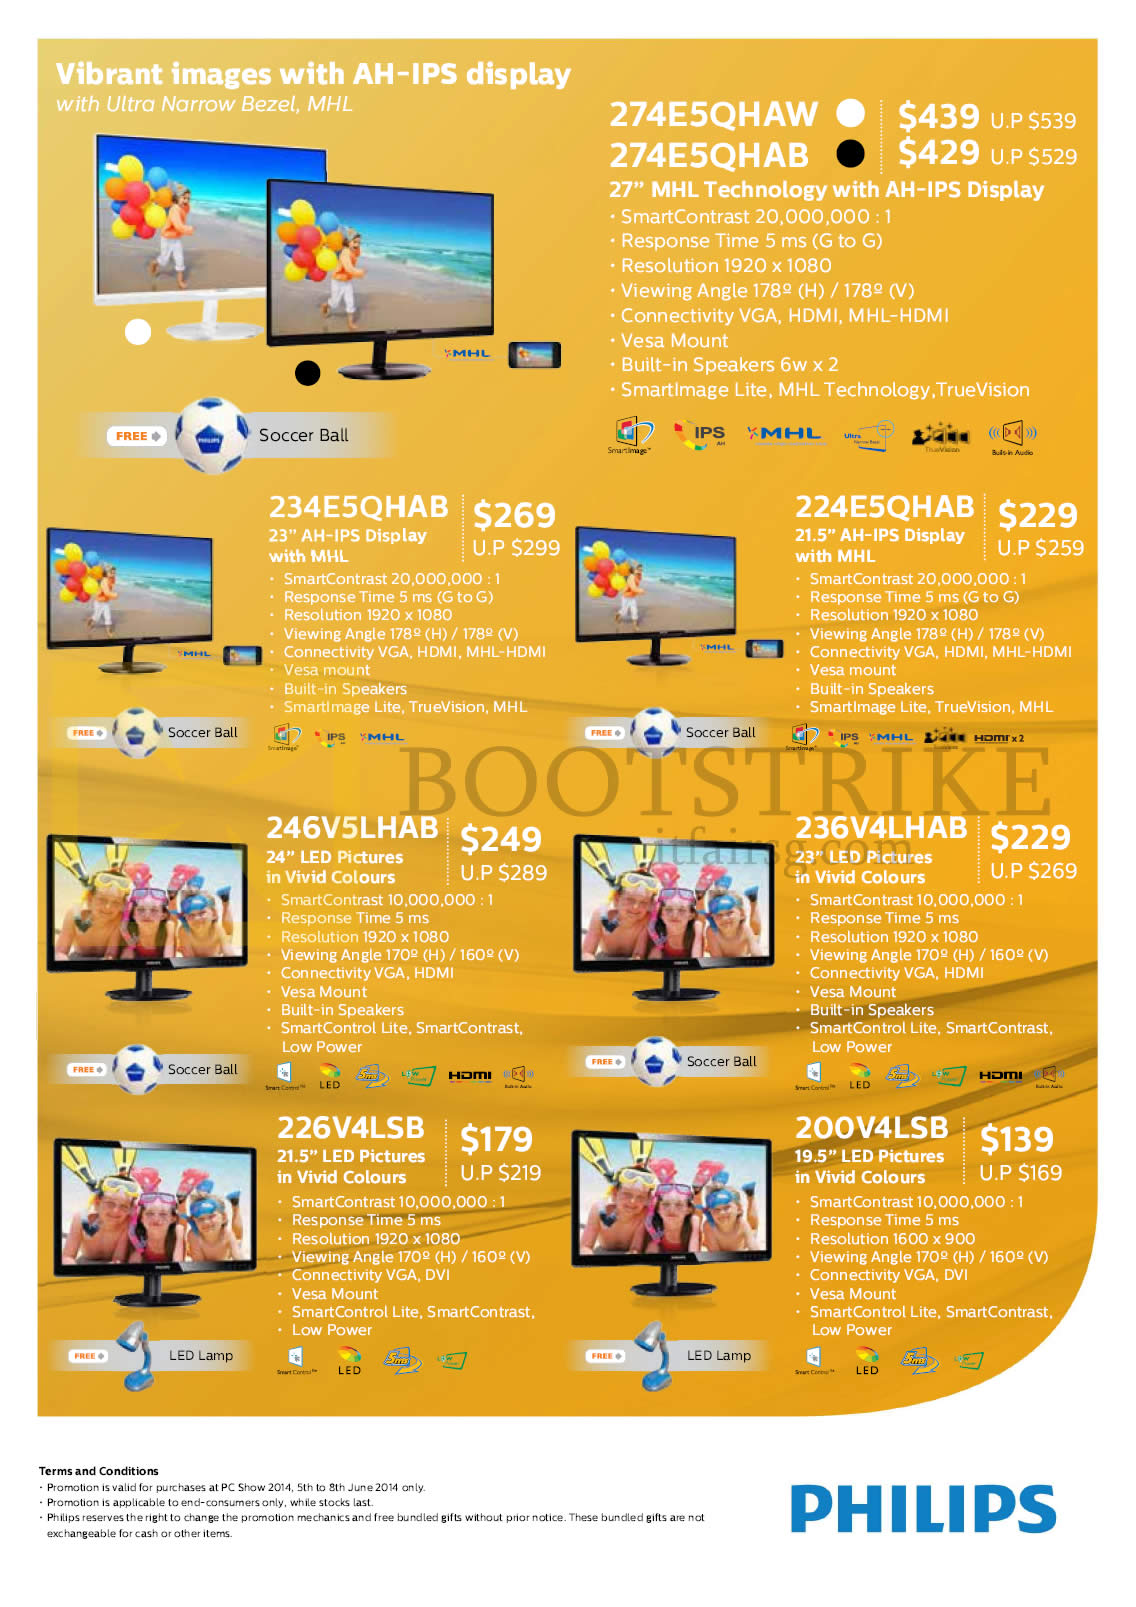 PC SHOW 2014 price list image brochure of Harvey Norman Philips Monitors 274E5QHAW, 274E5QHAB, 234E5QHAB, 224E5QHAB, 246V5LHAB, 236V4LHAB, 226V4LSB, 200V4LSB